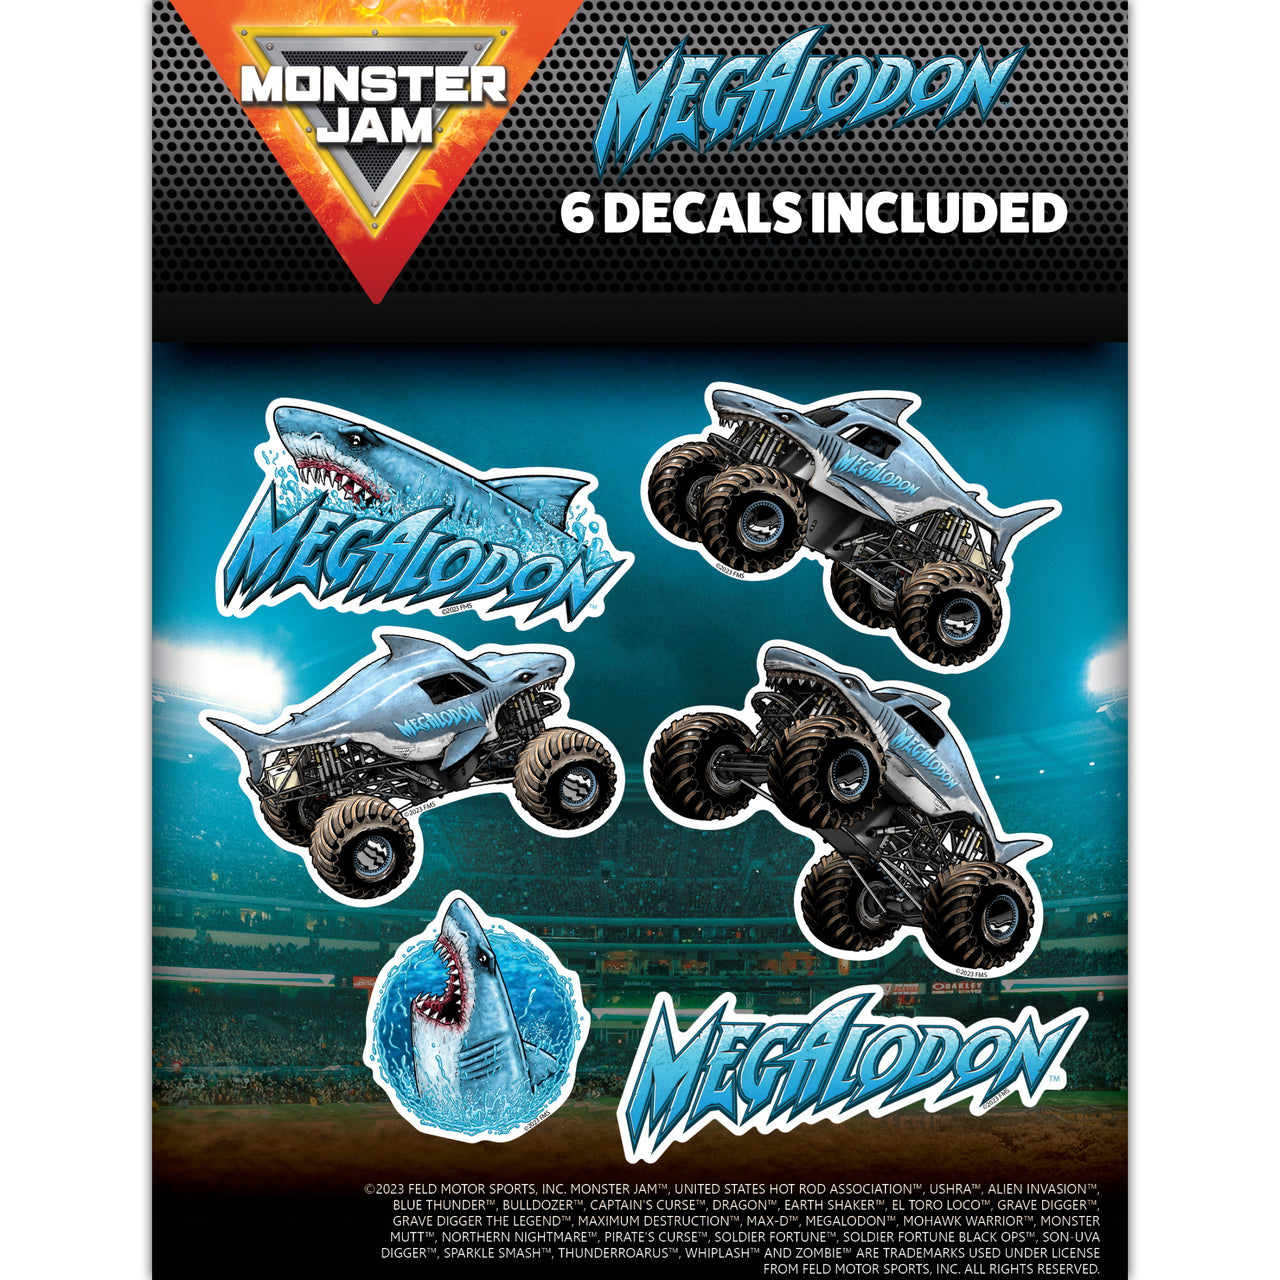 Monster Jam Megalodon Value Pack